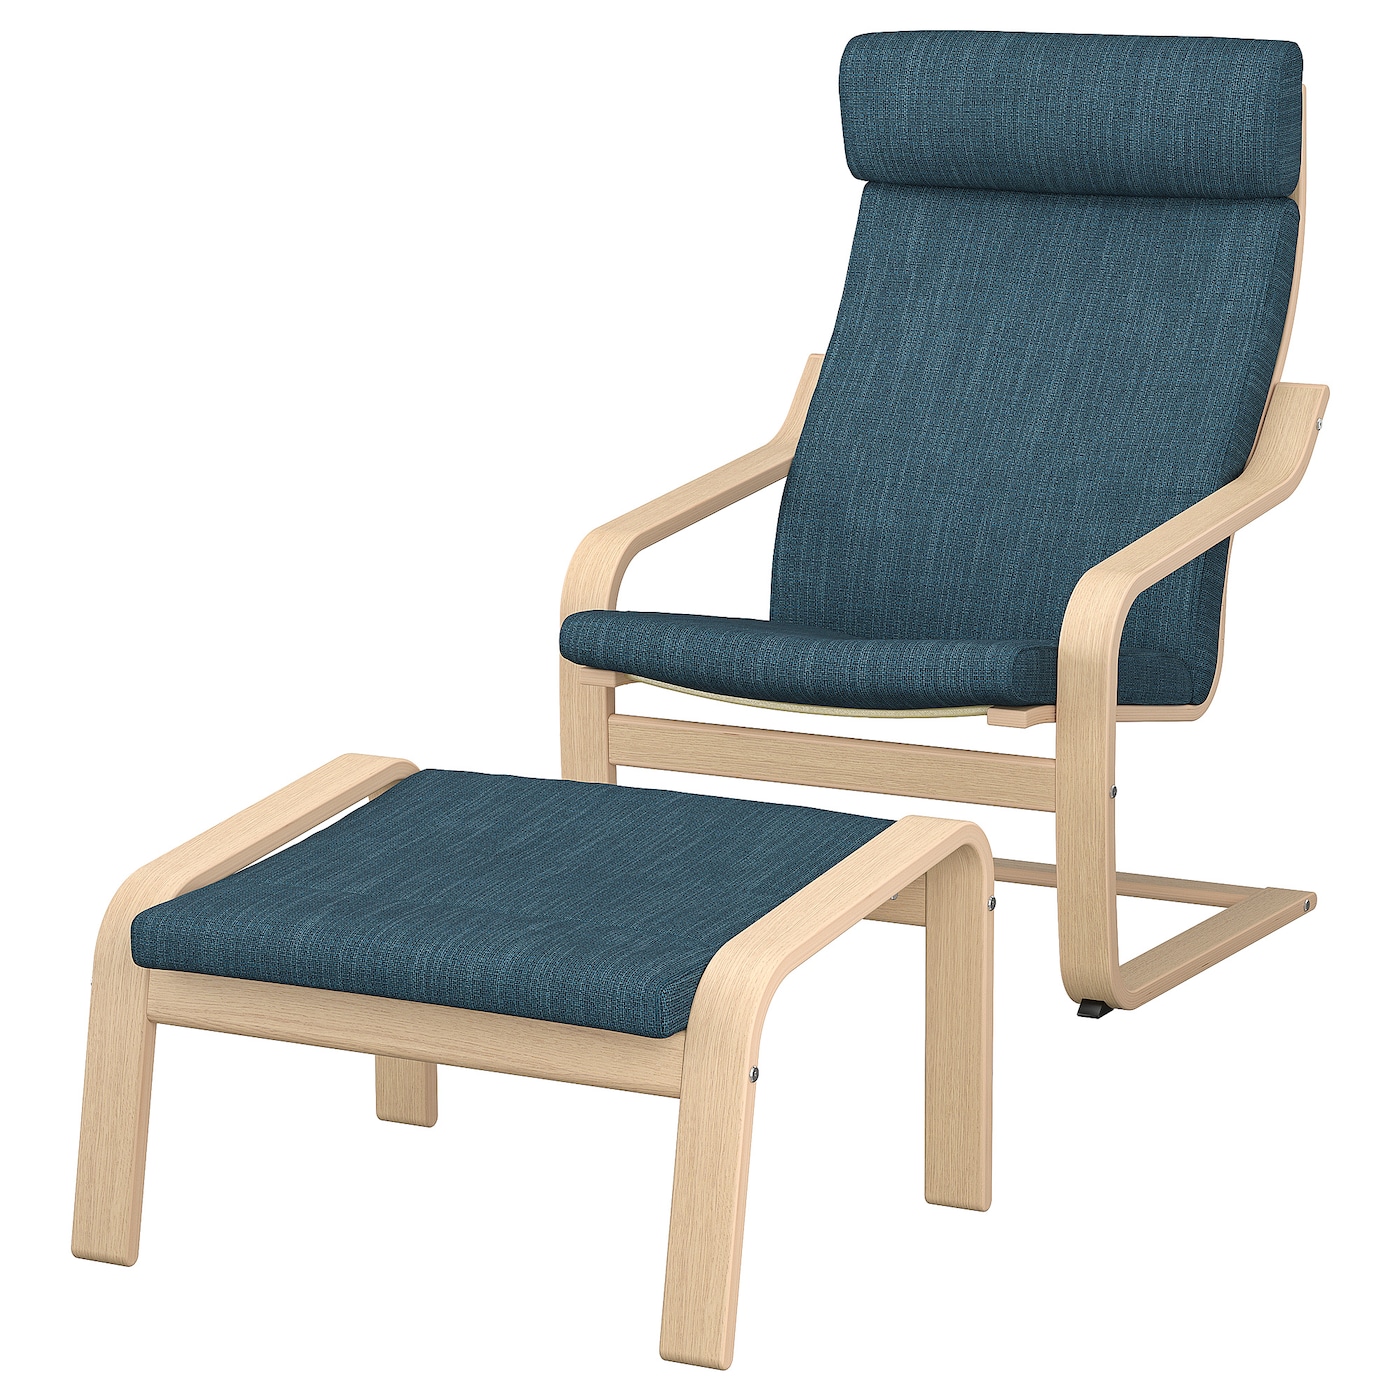 ПОЭНГ Кресло и подставка для ног, дубовый шпон светлый/Хилларед темно-синий POÄNG IKEA